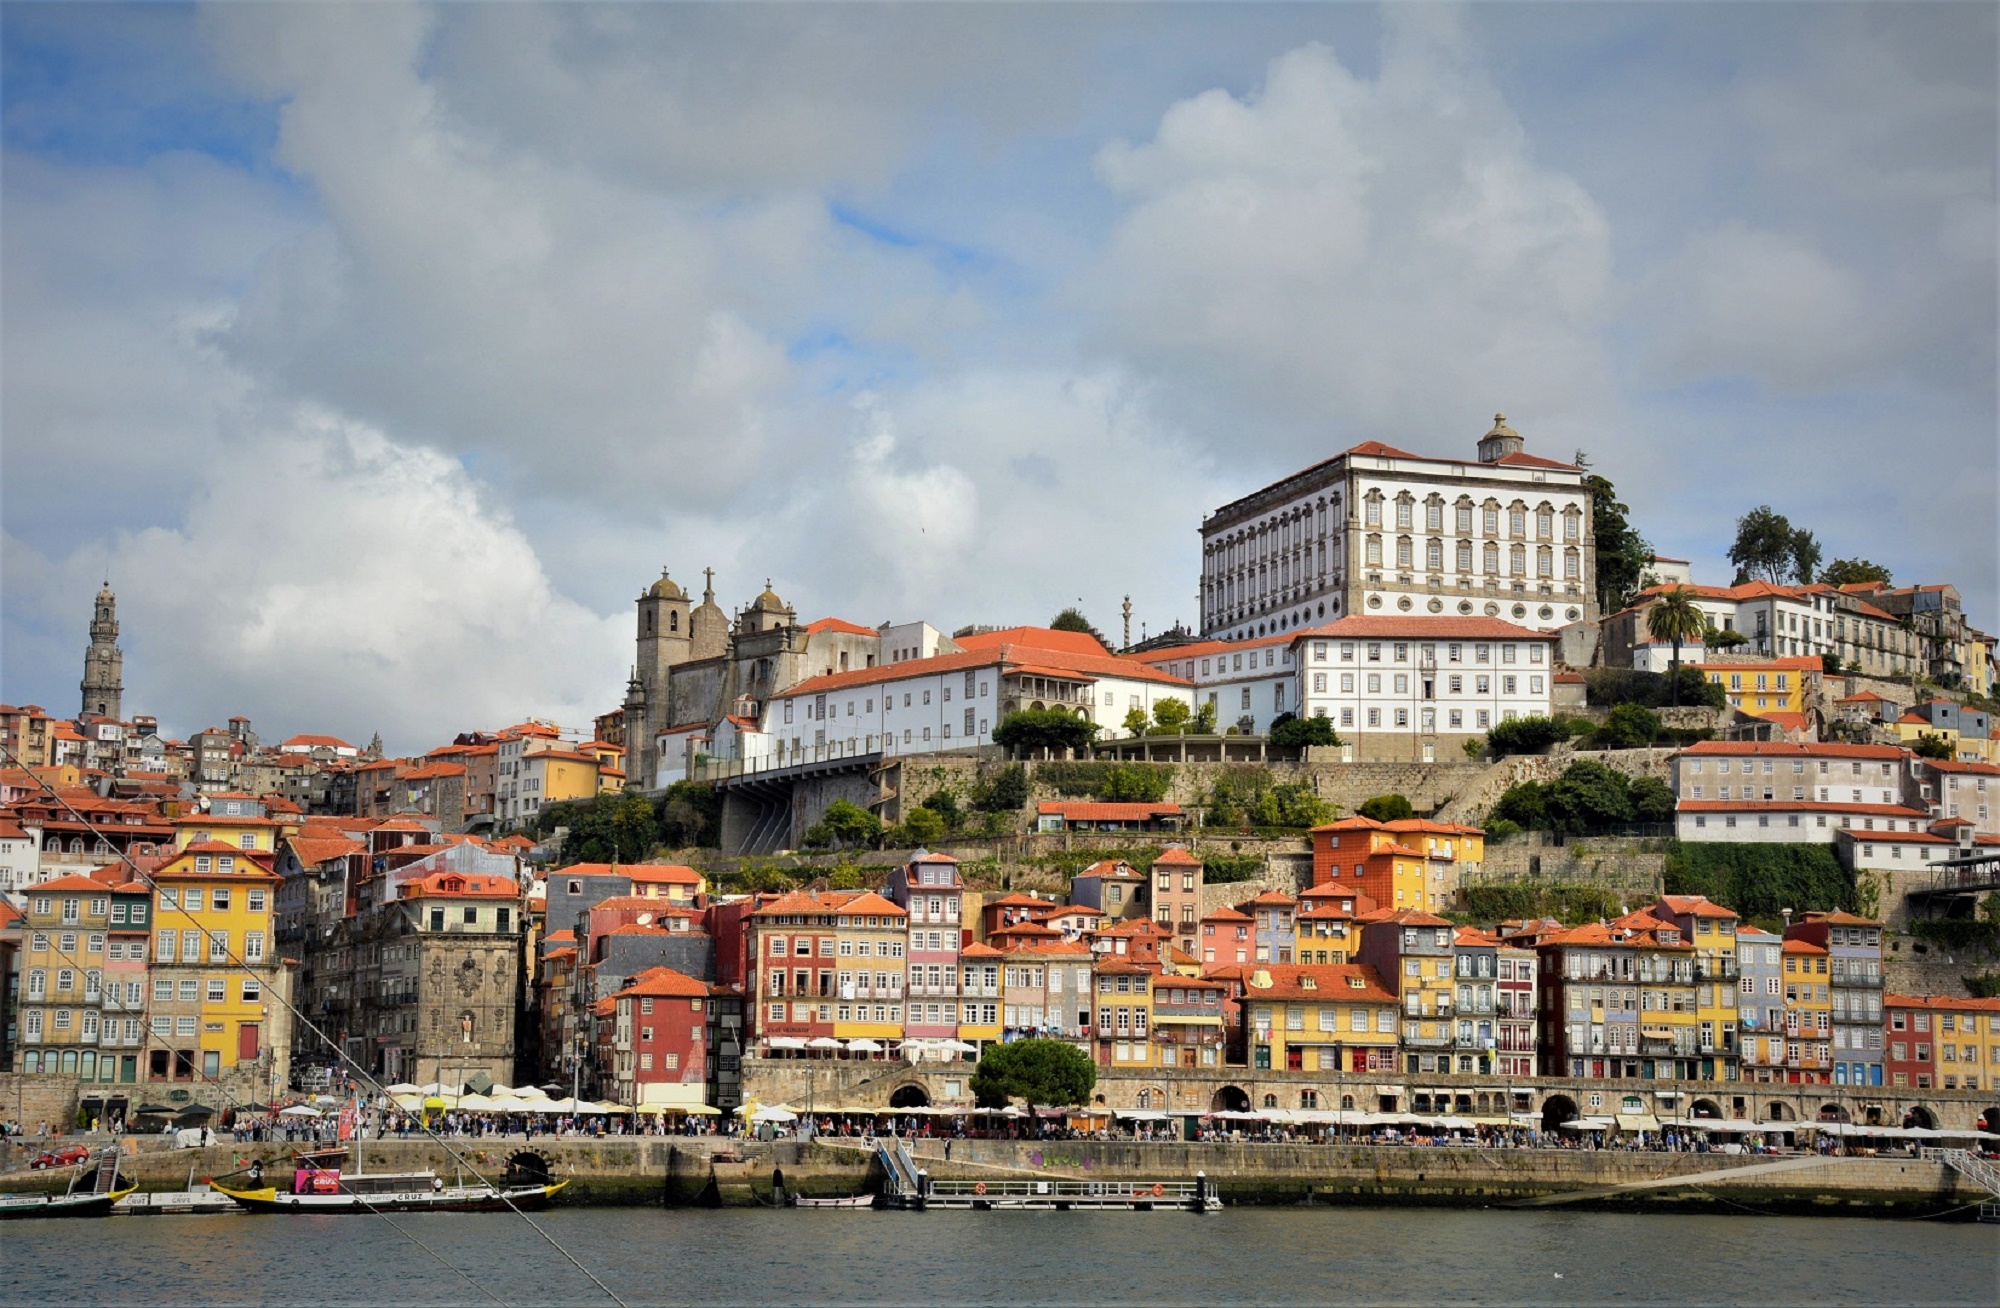 City of Porto by Alexander Rasputnis, PPSA